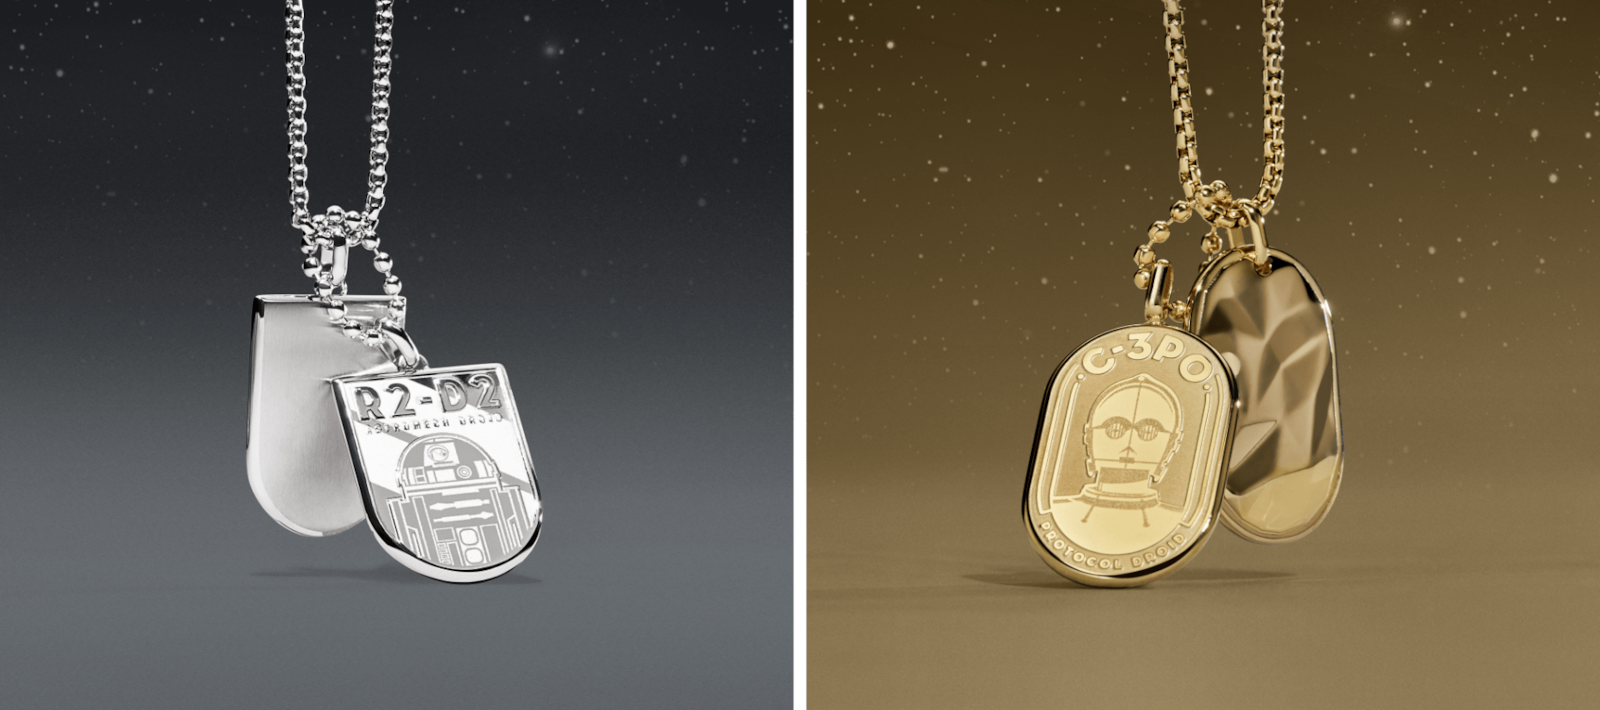 Eine goldfarbene Halskette mit einer C-3PO-Gravur auf der Schmuckplatte und eine silberfarbene Halskette mit einer R2-D2-Gravur auf der Schmuckplatte